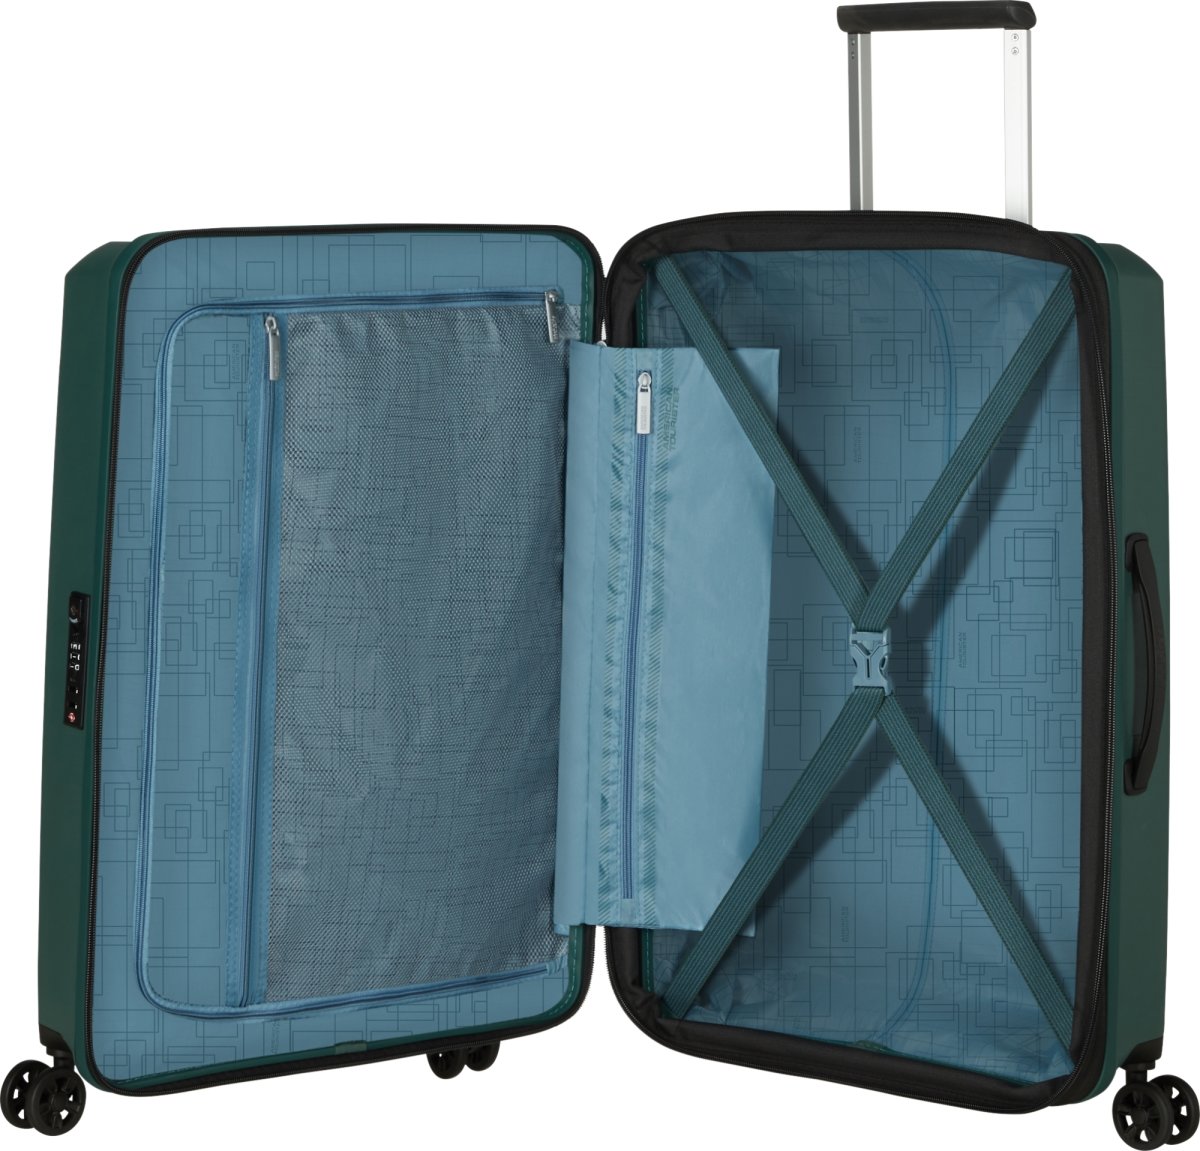 American Tourister resväska | 67 cm | Grön